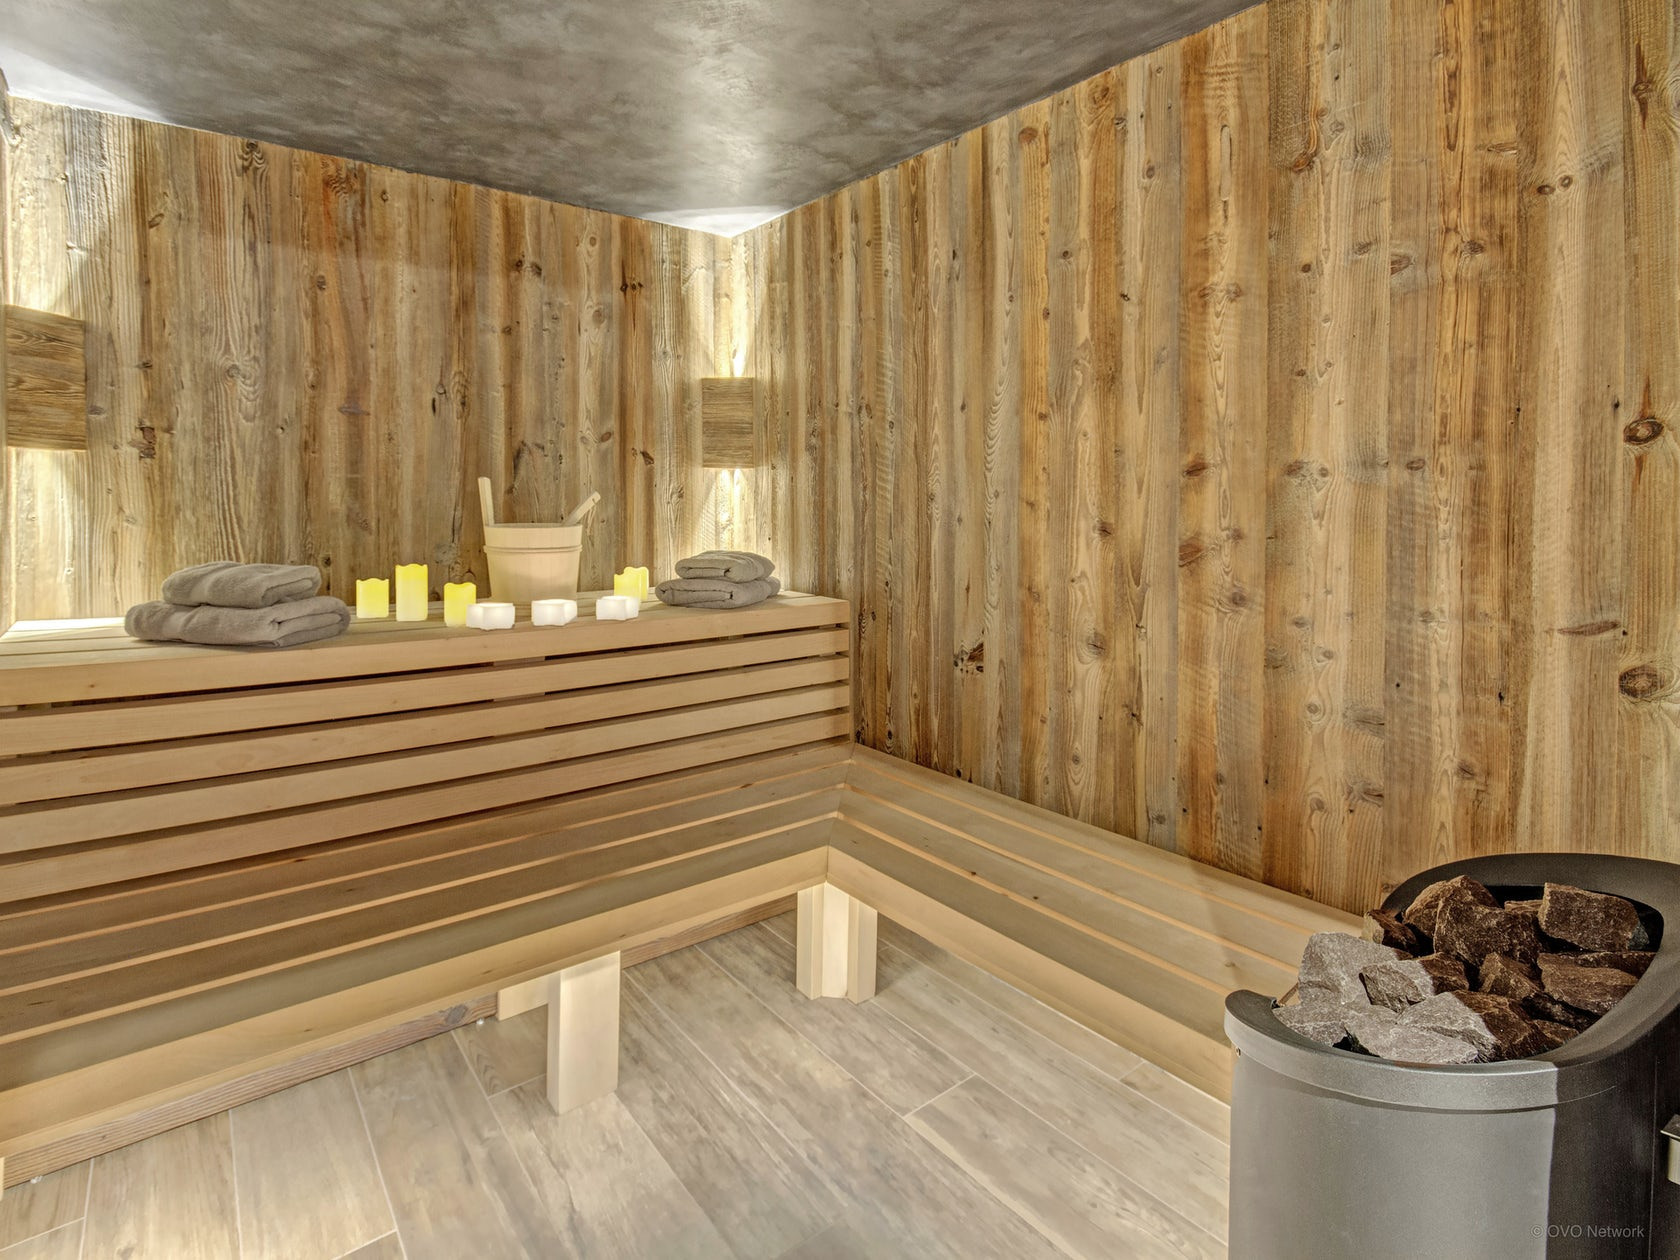 La Clusaz Location Chalet Luxe Lewodite Sauna